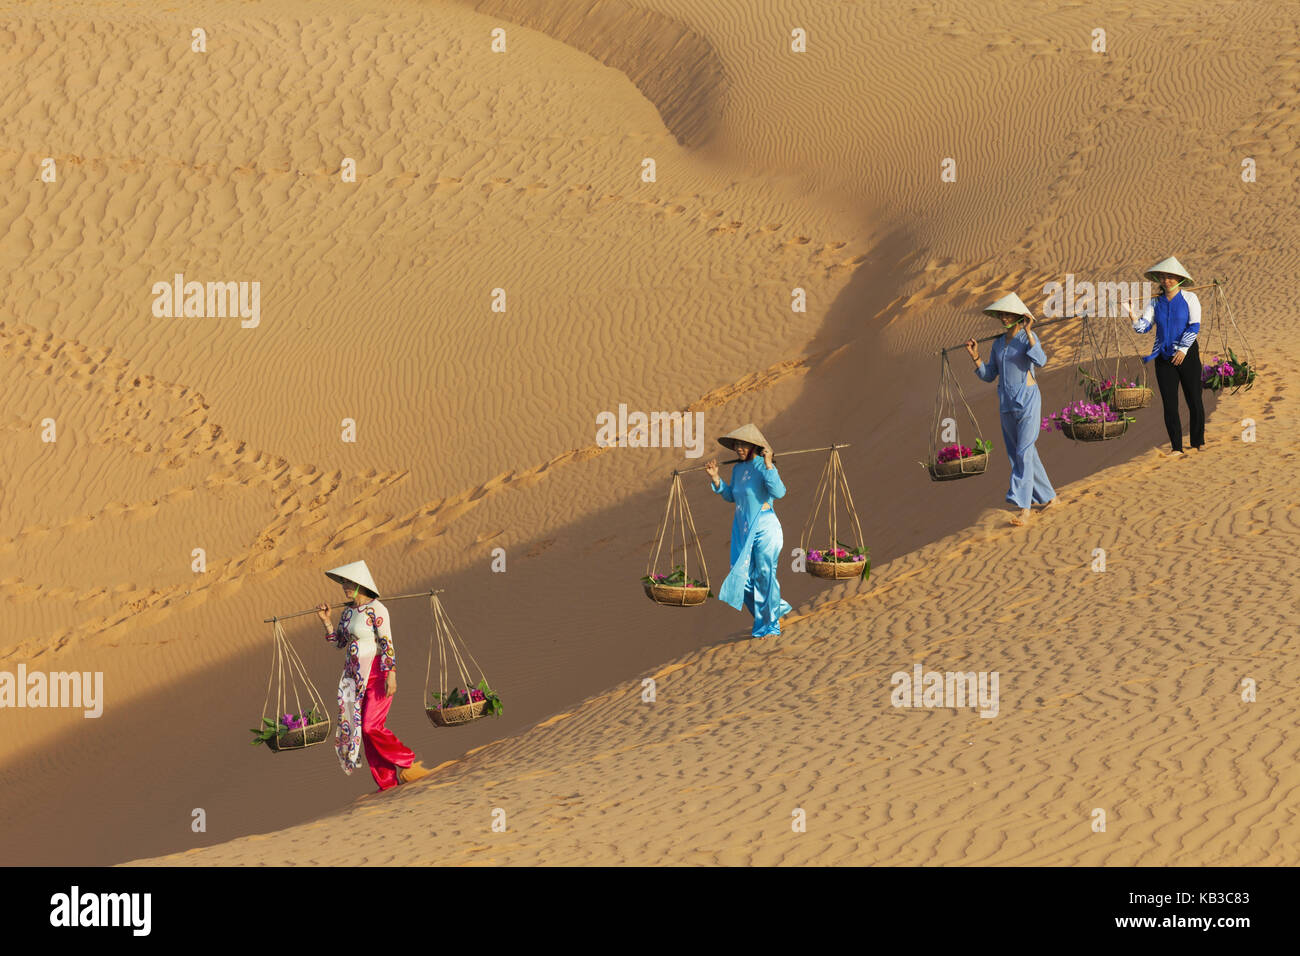 Vietnam, Mui Ne, Sand dune, women carry costs, Stock Photo